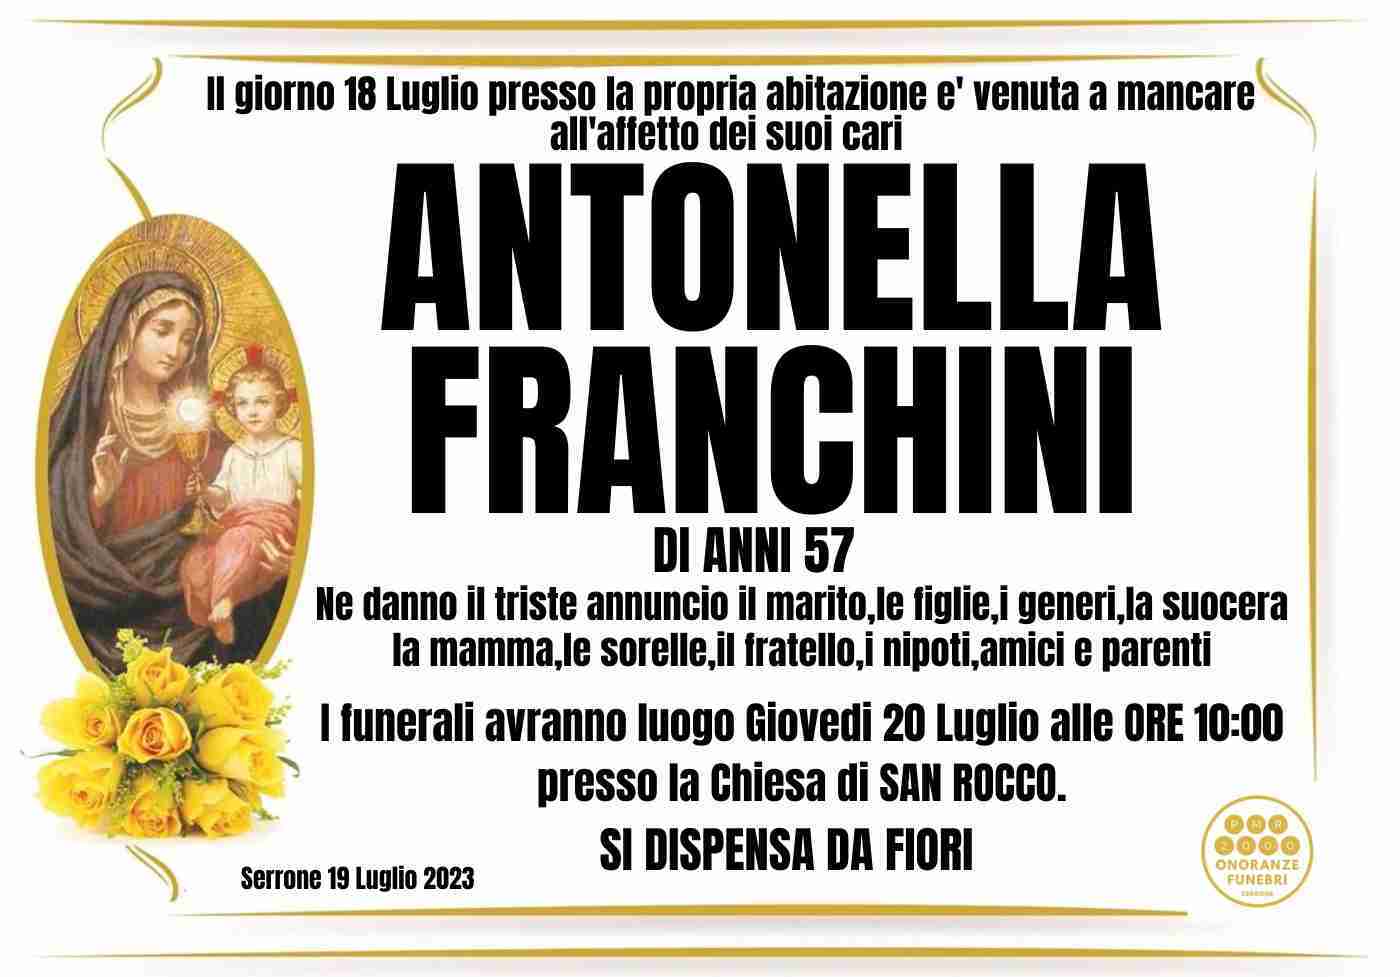 Antonella Franchini